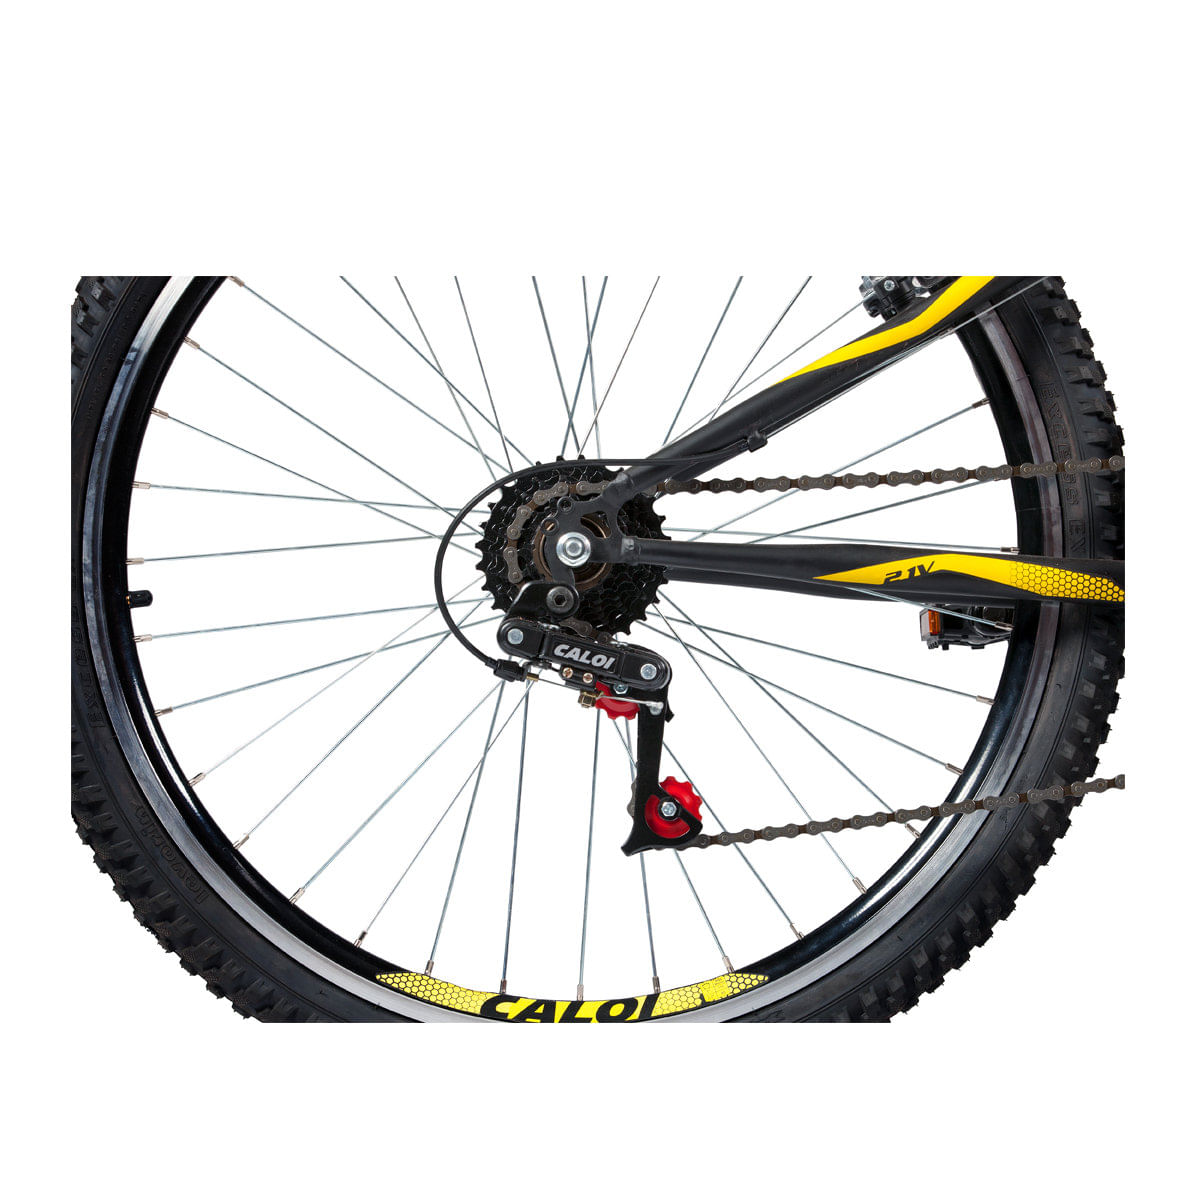 5092221_Bicicleta-Caloi-Aro-26-21-Marchas-Andes-Mountain-Bike-Preta_5_Zoom